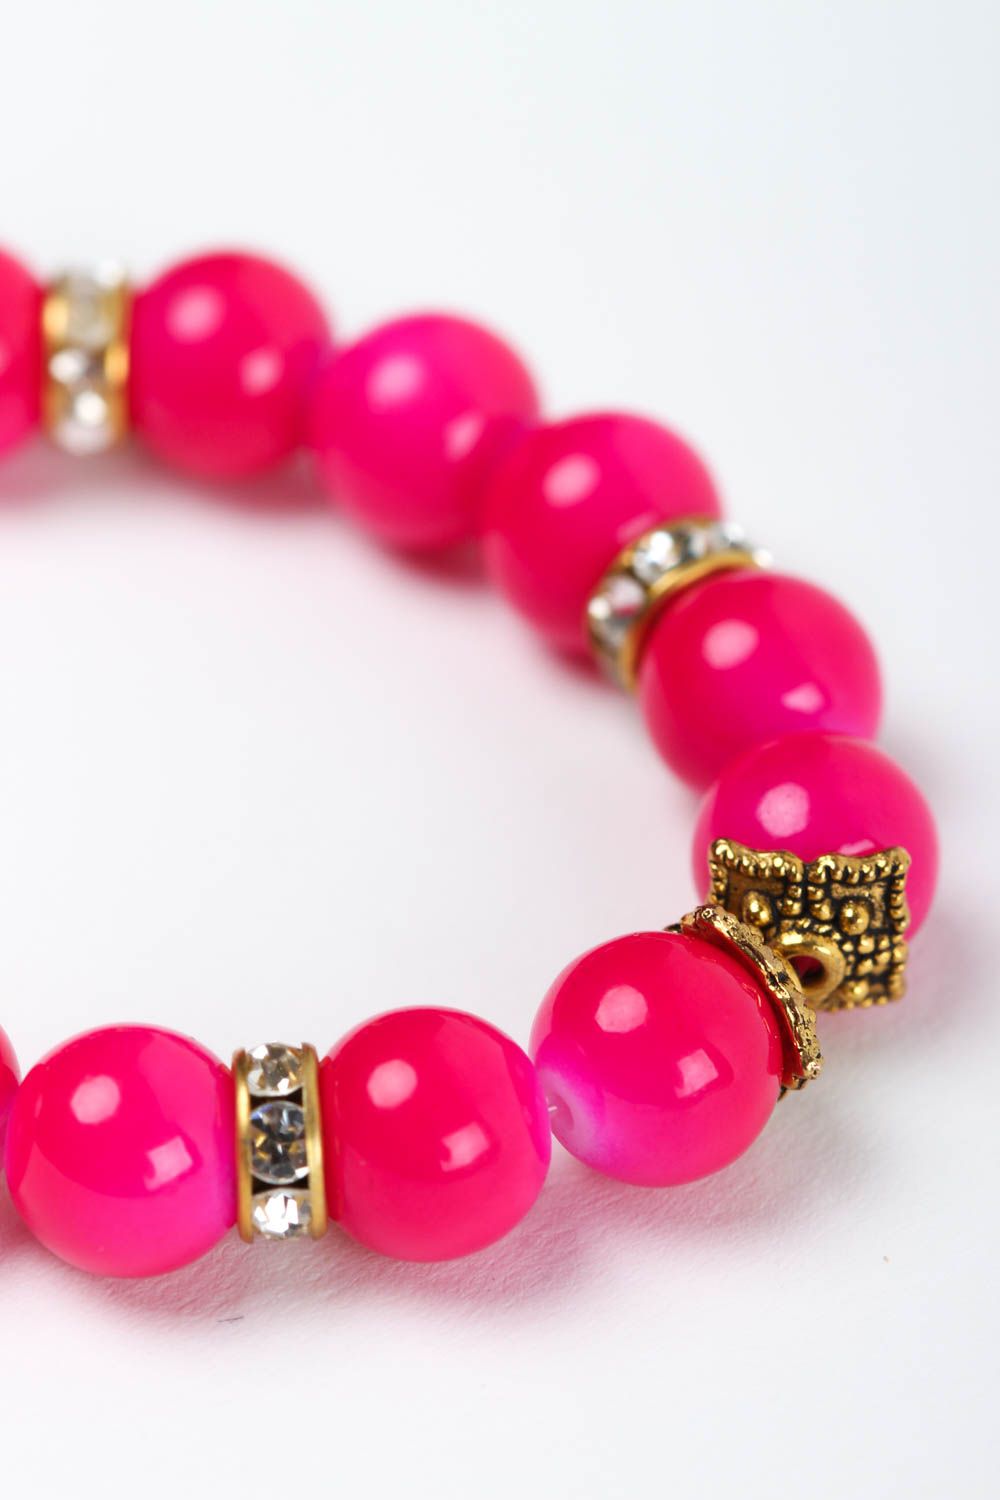 Браслет из бусин яркий розовый модный браслет красивый женский браслет из бусин фото 4